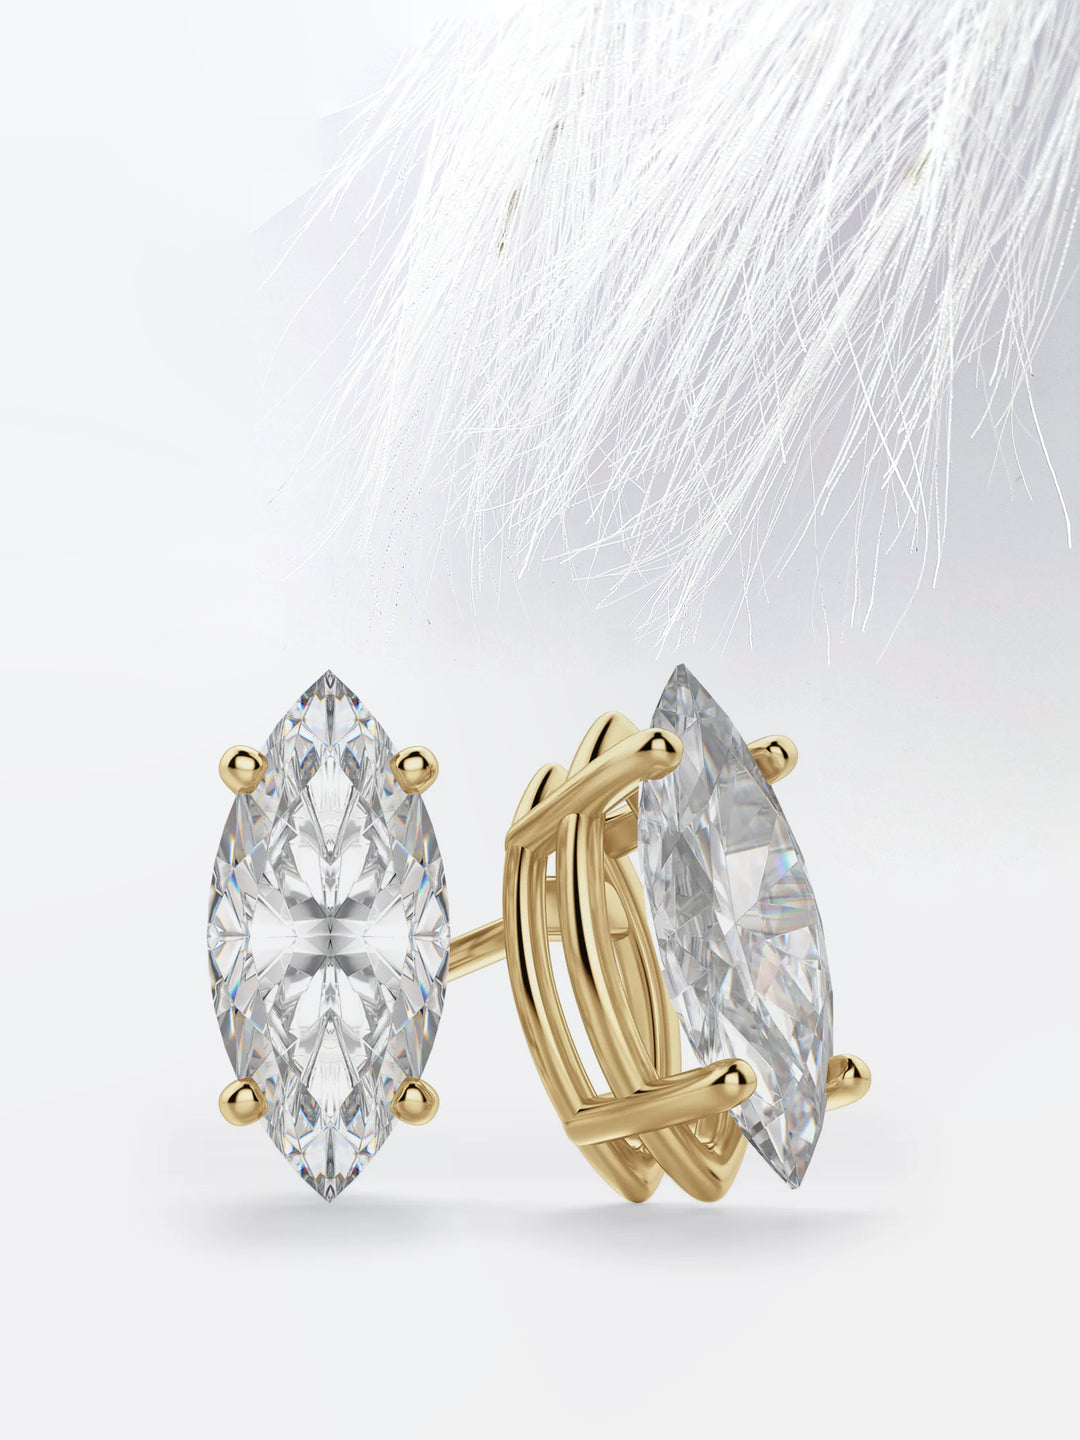 Marquise Cut Moissanite Diamond Stud Earrings in 14K White Gold